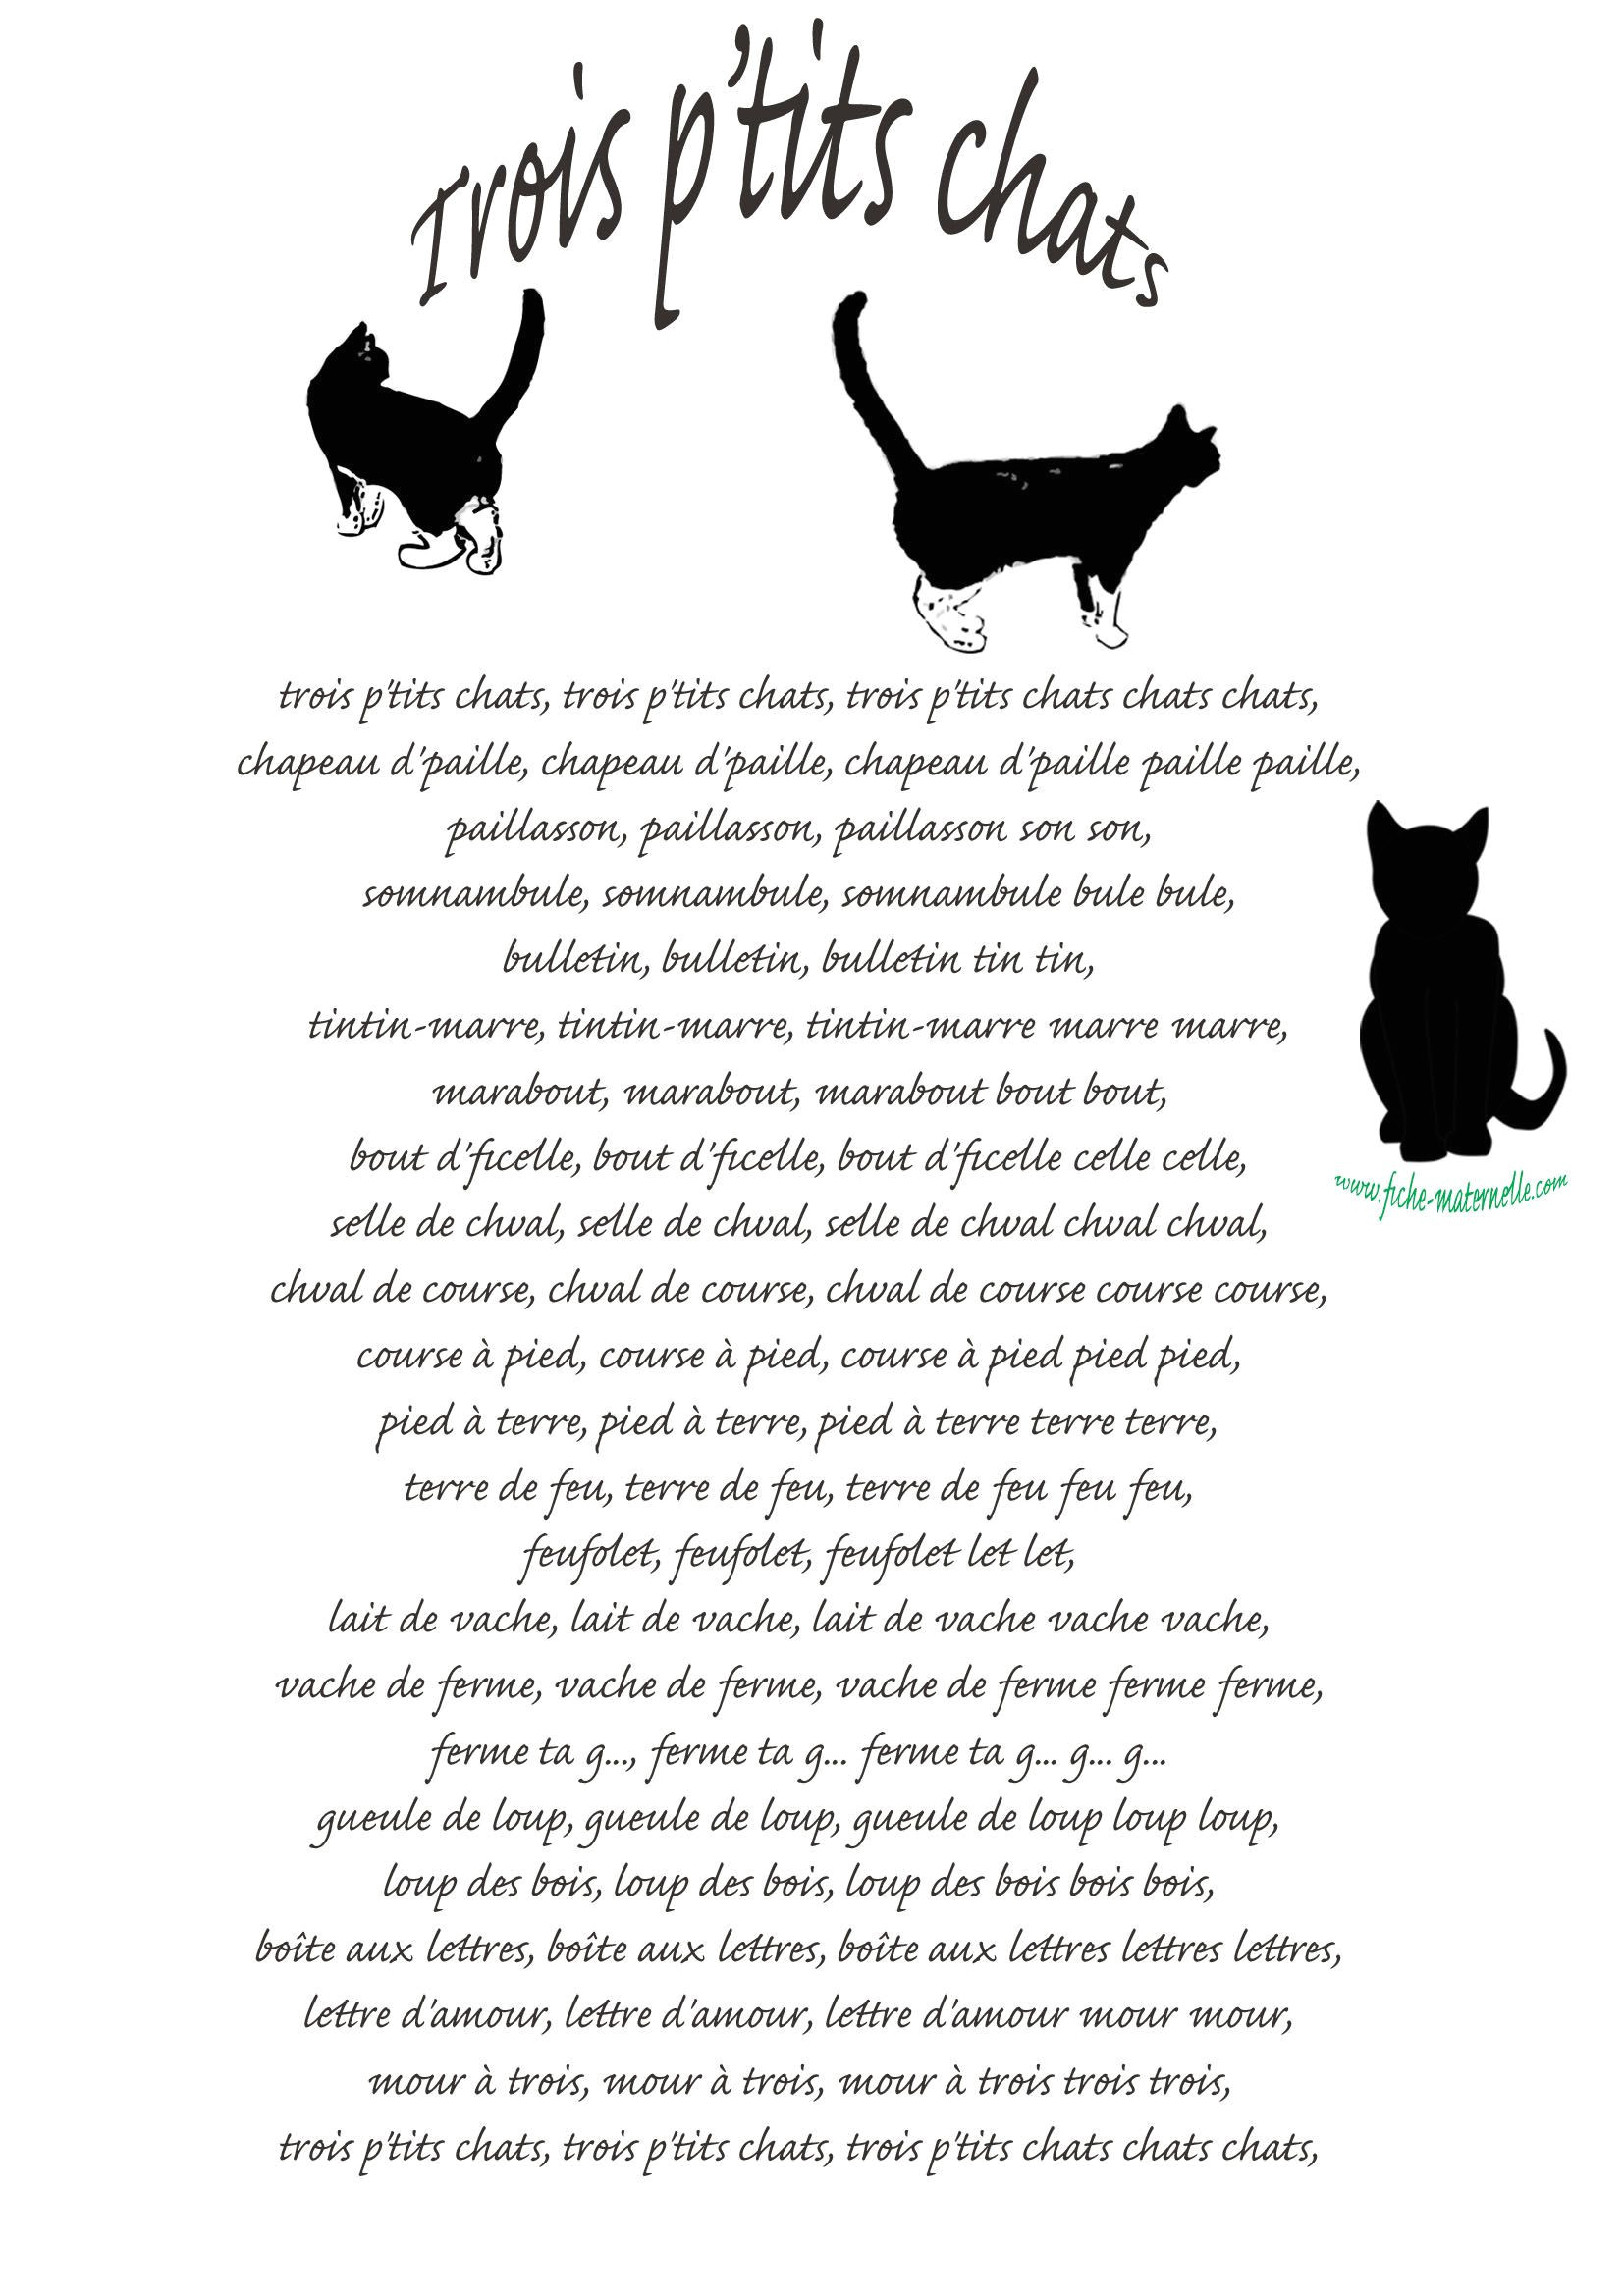 chanson 3 petits chats elegant nouveau image de chat a imprimer en couleur of chanson 3 petits chats